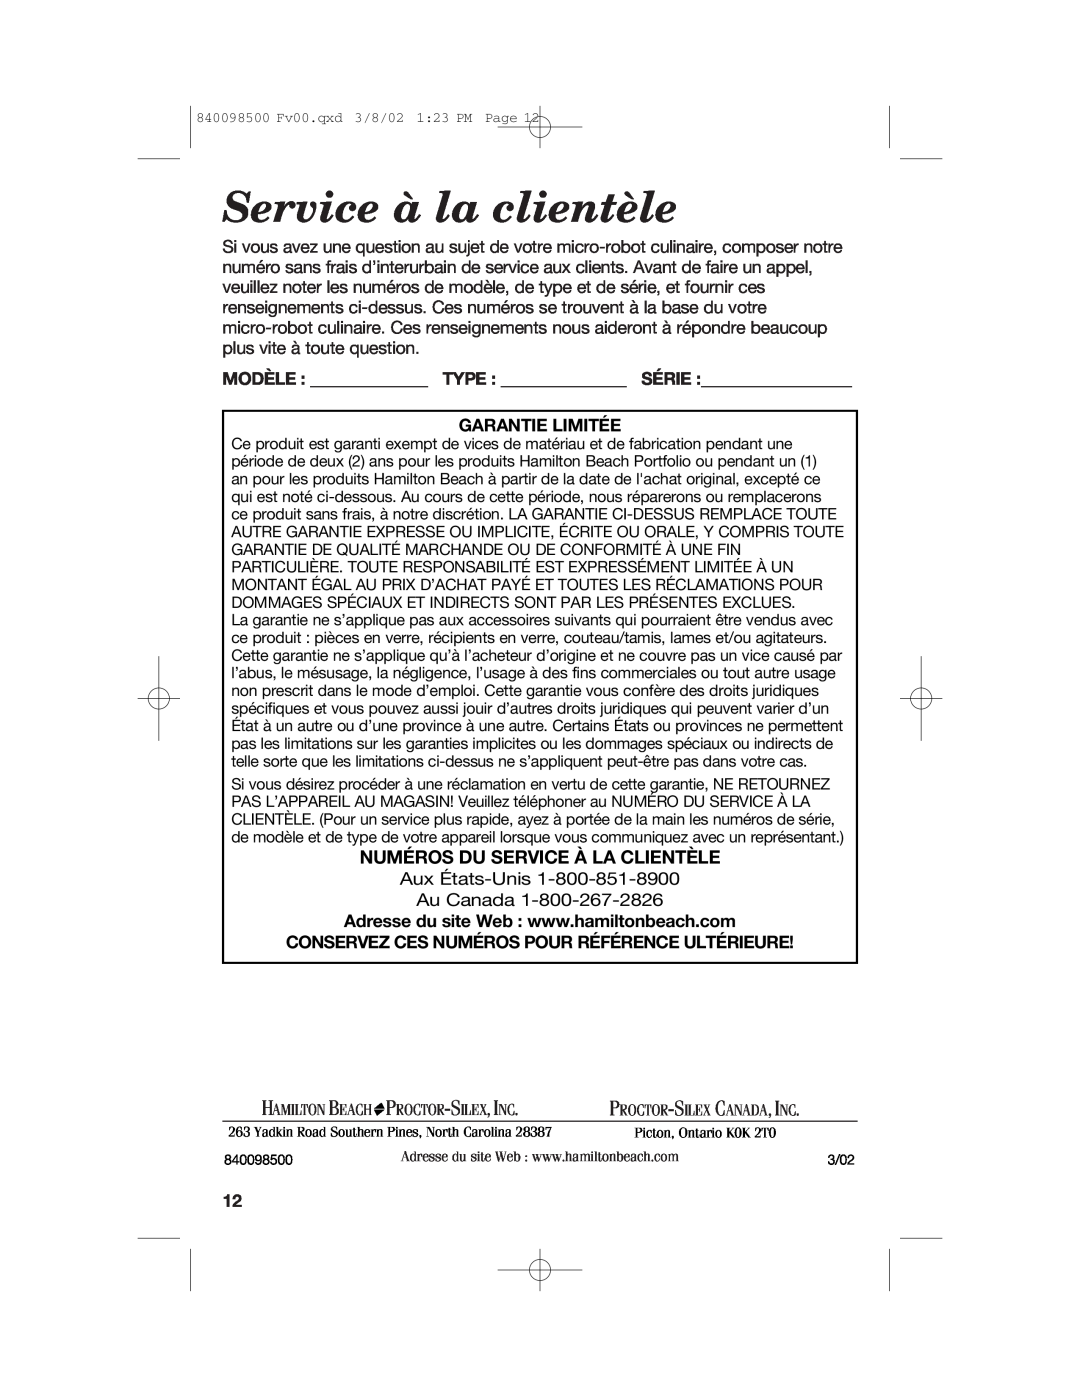 Hamilton Beach 70200 manual Service à la clientèle, Numéros Du Service À La Clientèle, Modèle Type Série Garantie Limitée 